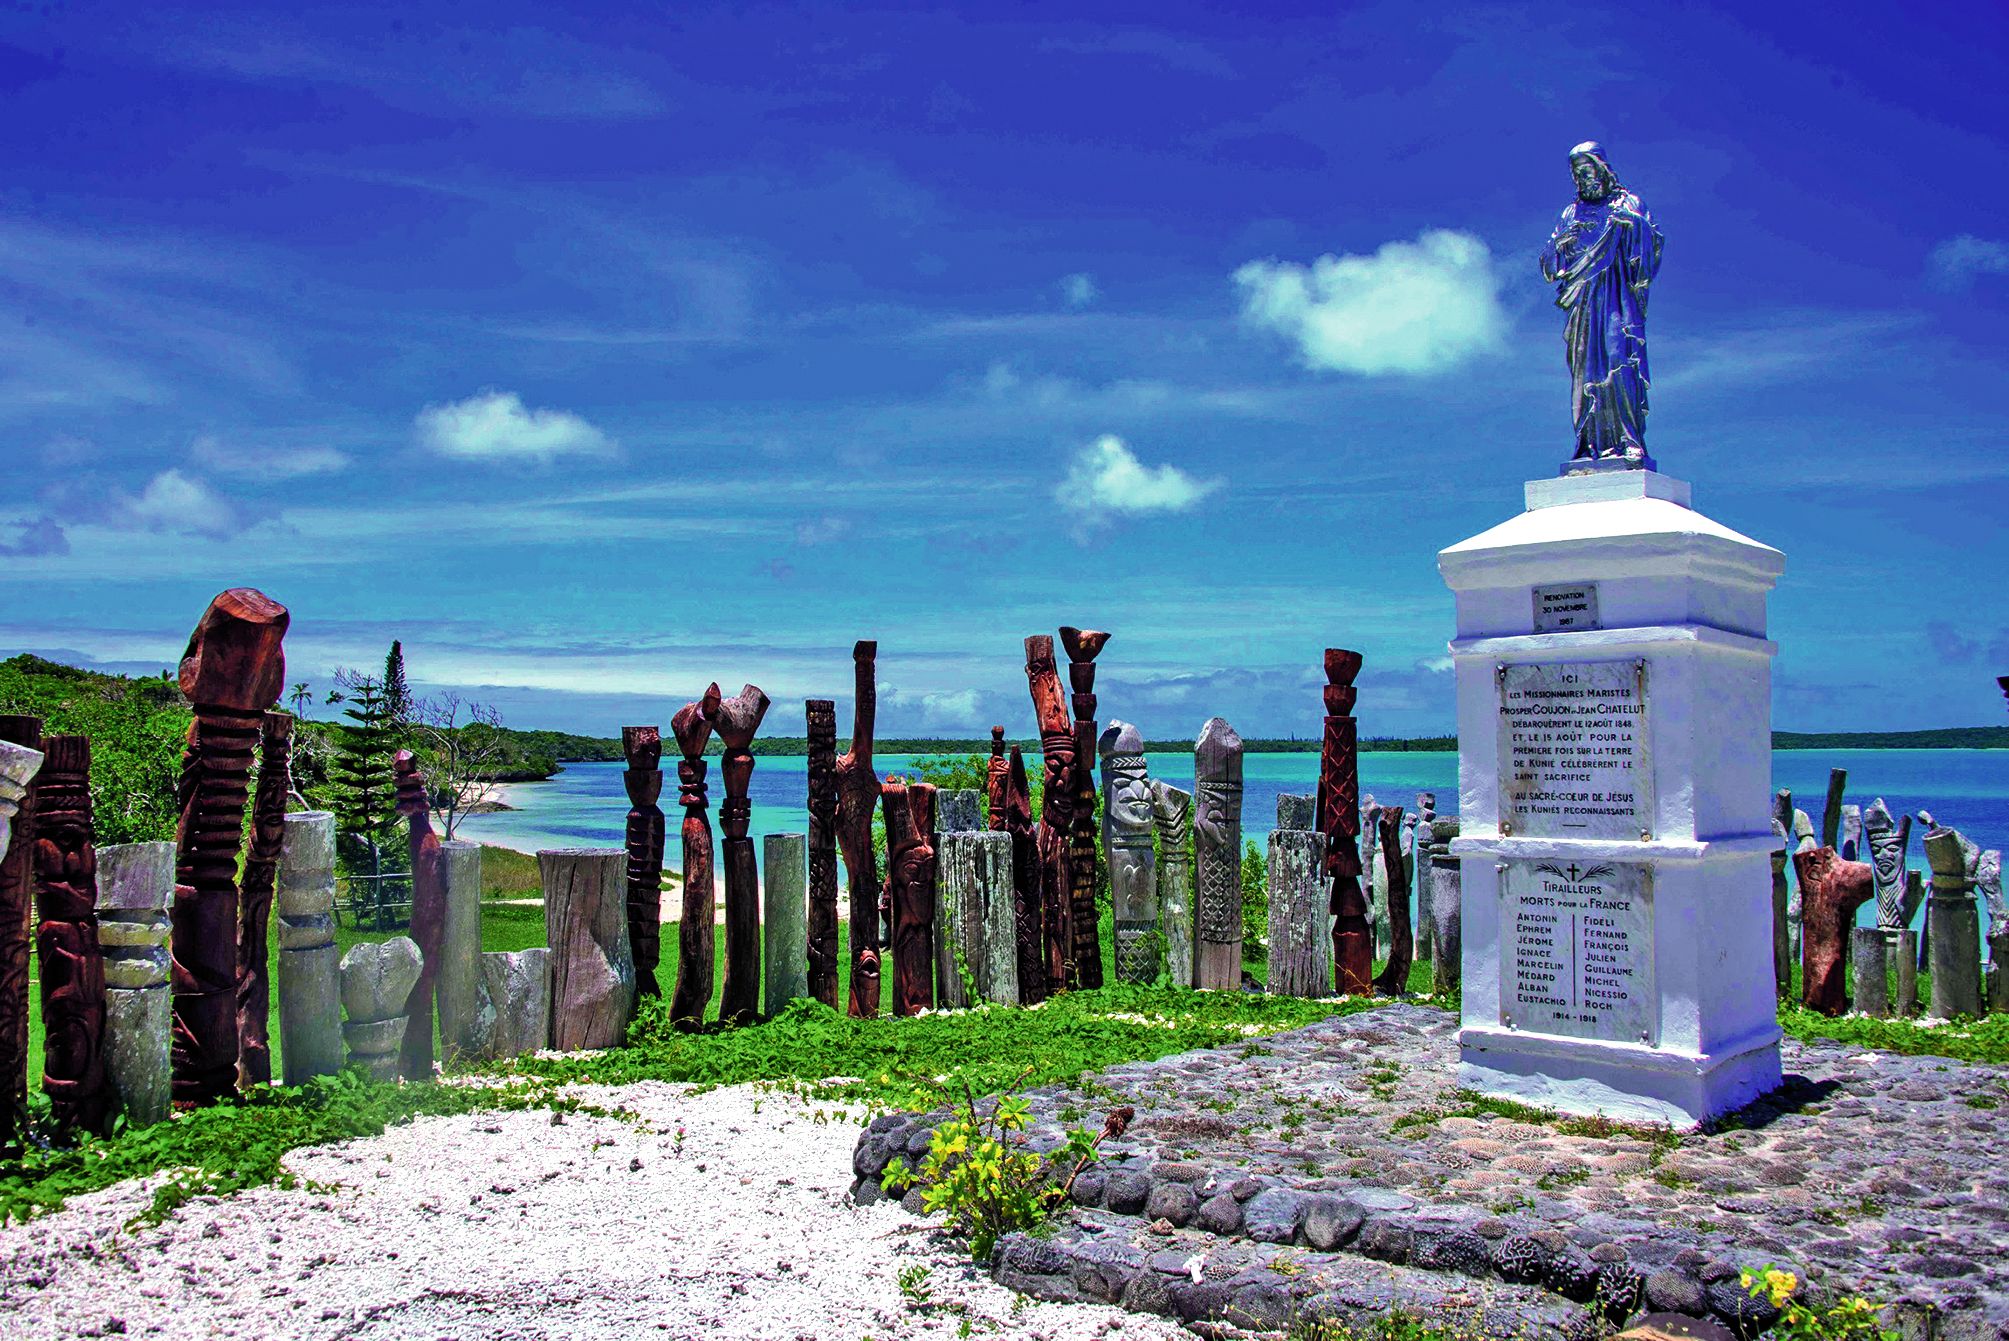 Entouré de sculptures kanak, ce monument sur la baie de Saint-Maurice célèbre l’arrivée des missionnaires maristes, le 12 août 1848. Photo Olivier Poisson.